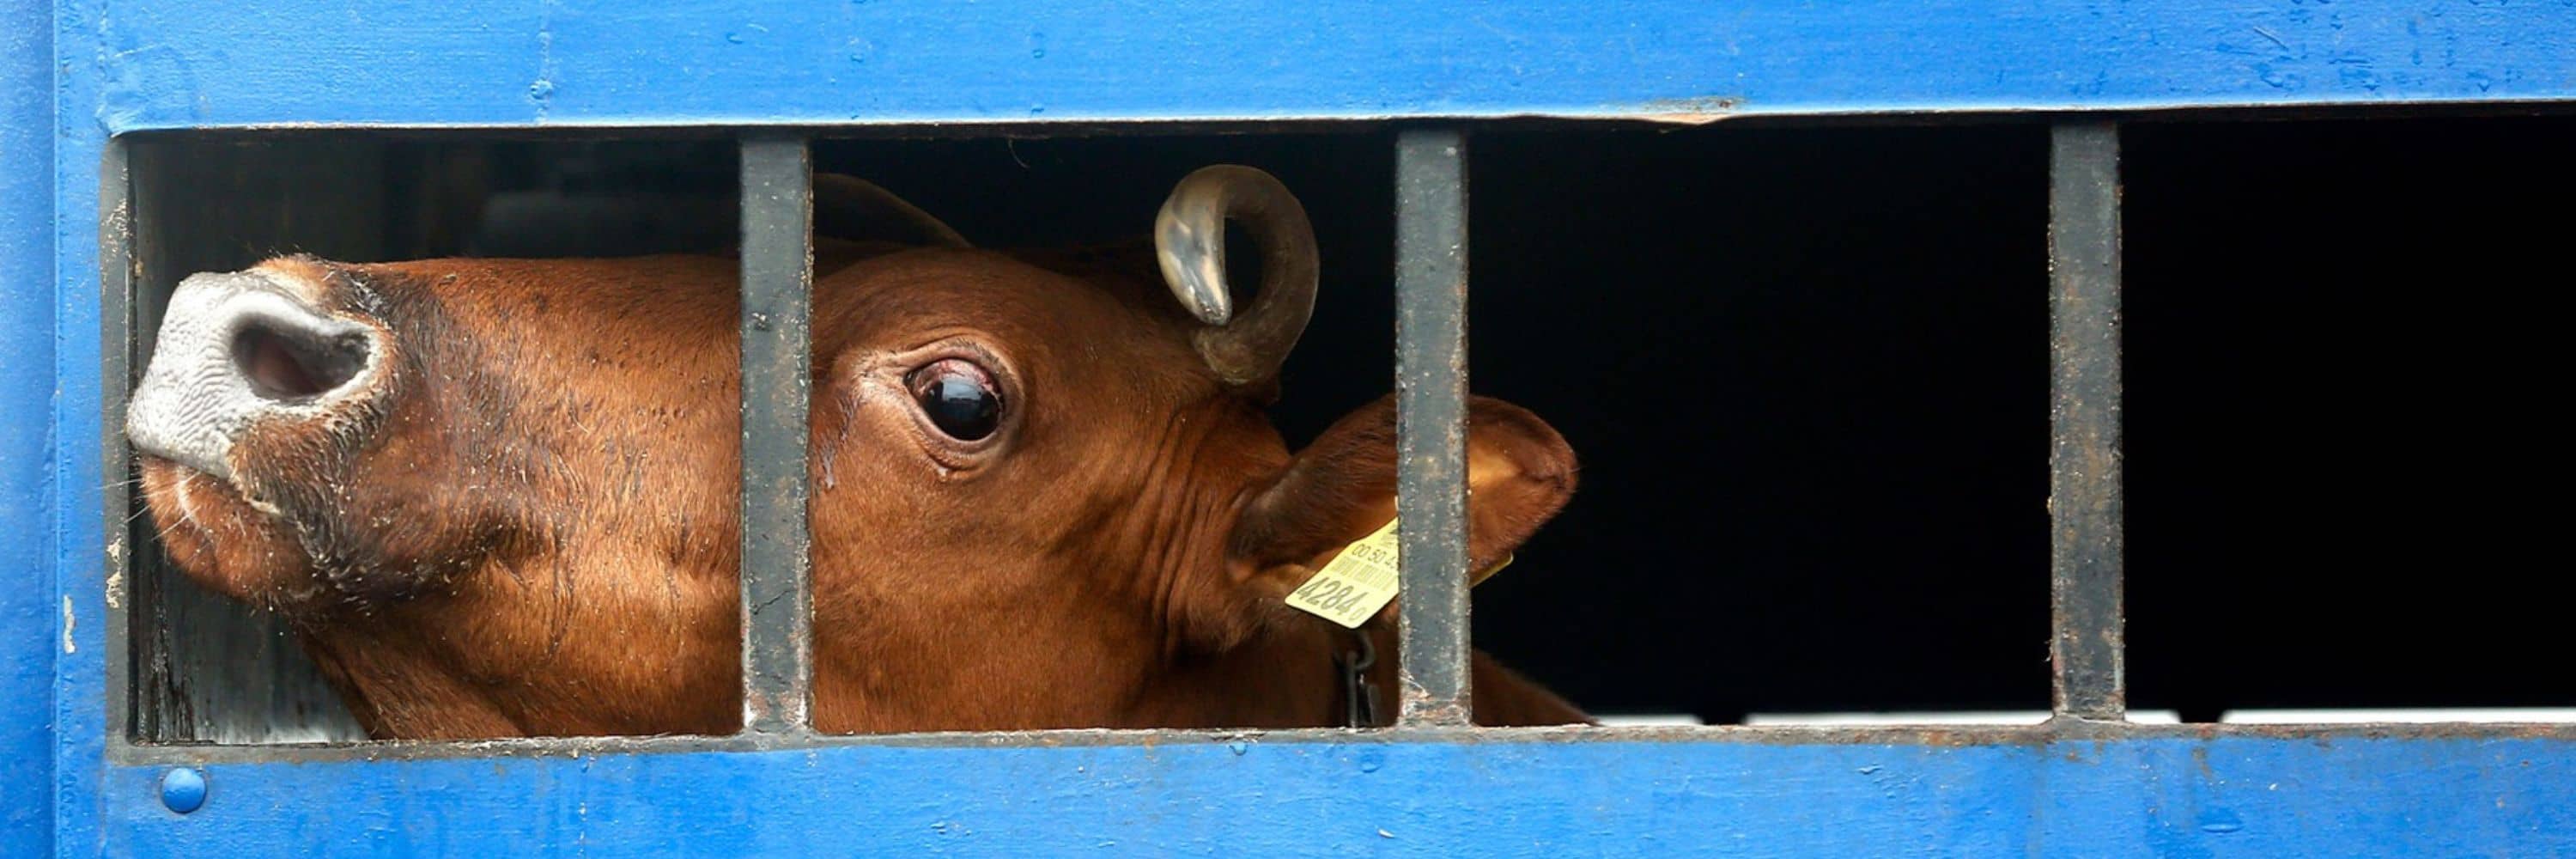 Una vaca marrón asoma el hocico a través de los barrotes del barco donde es transportada.